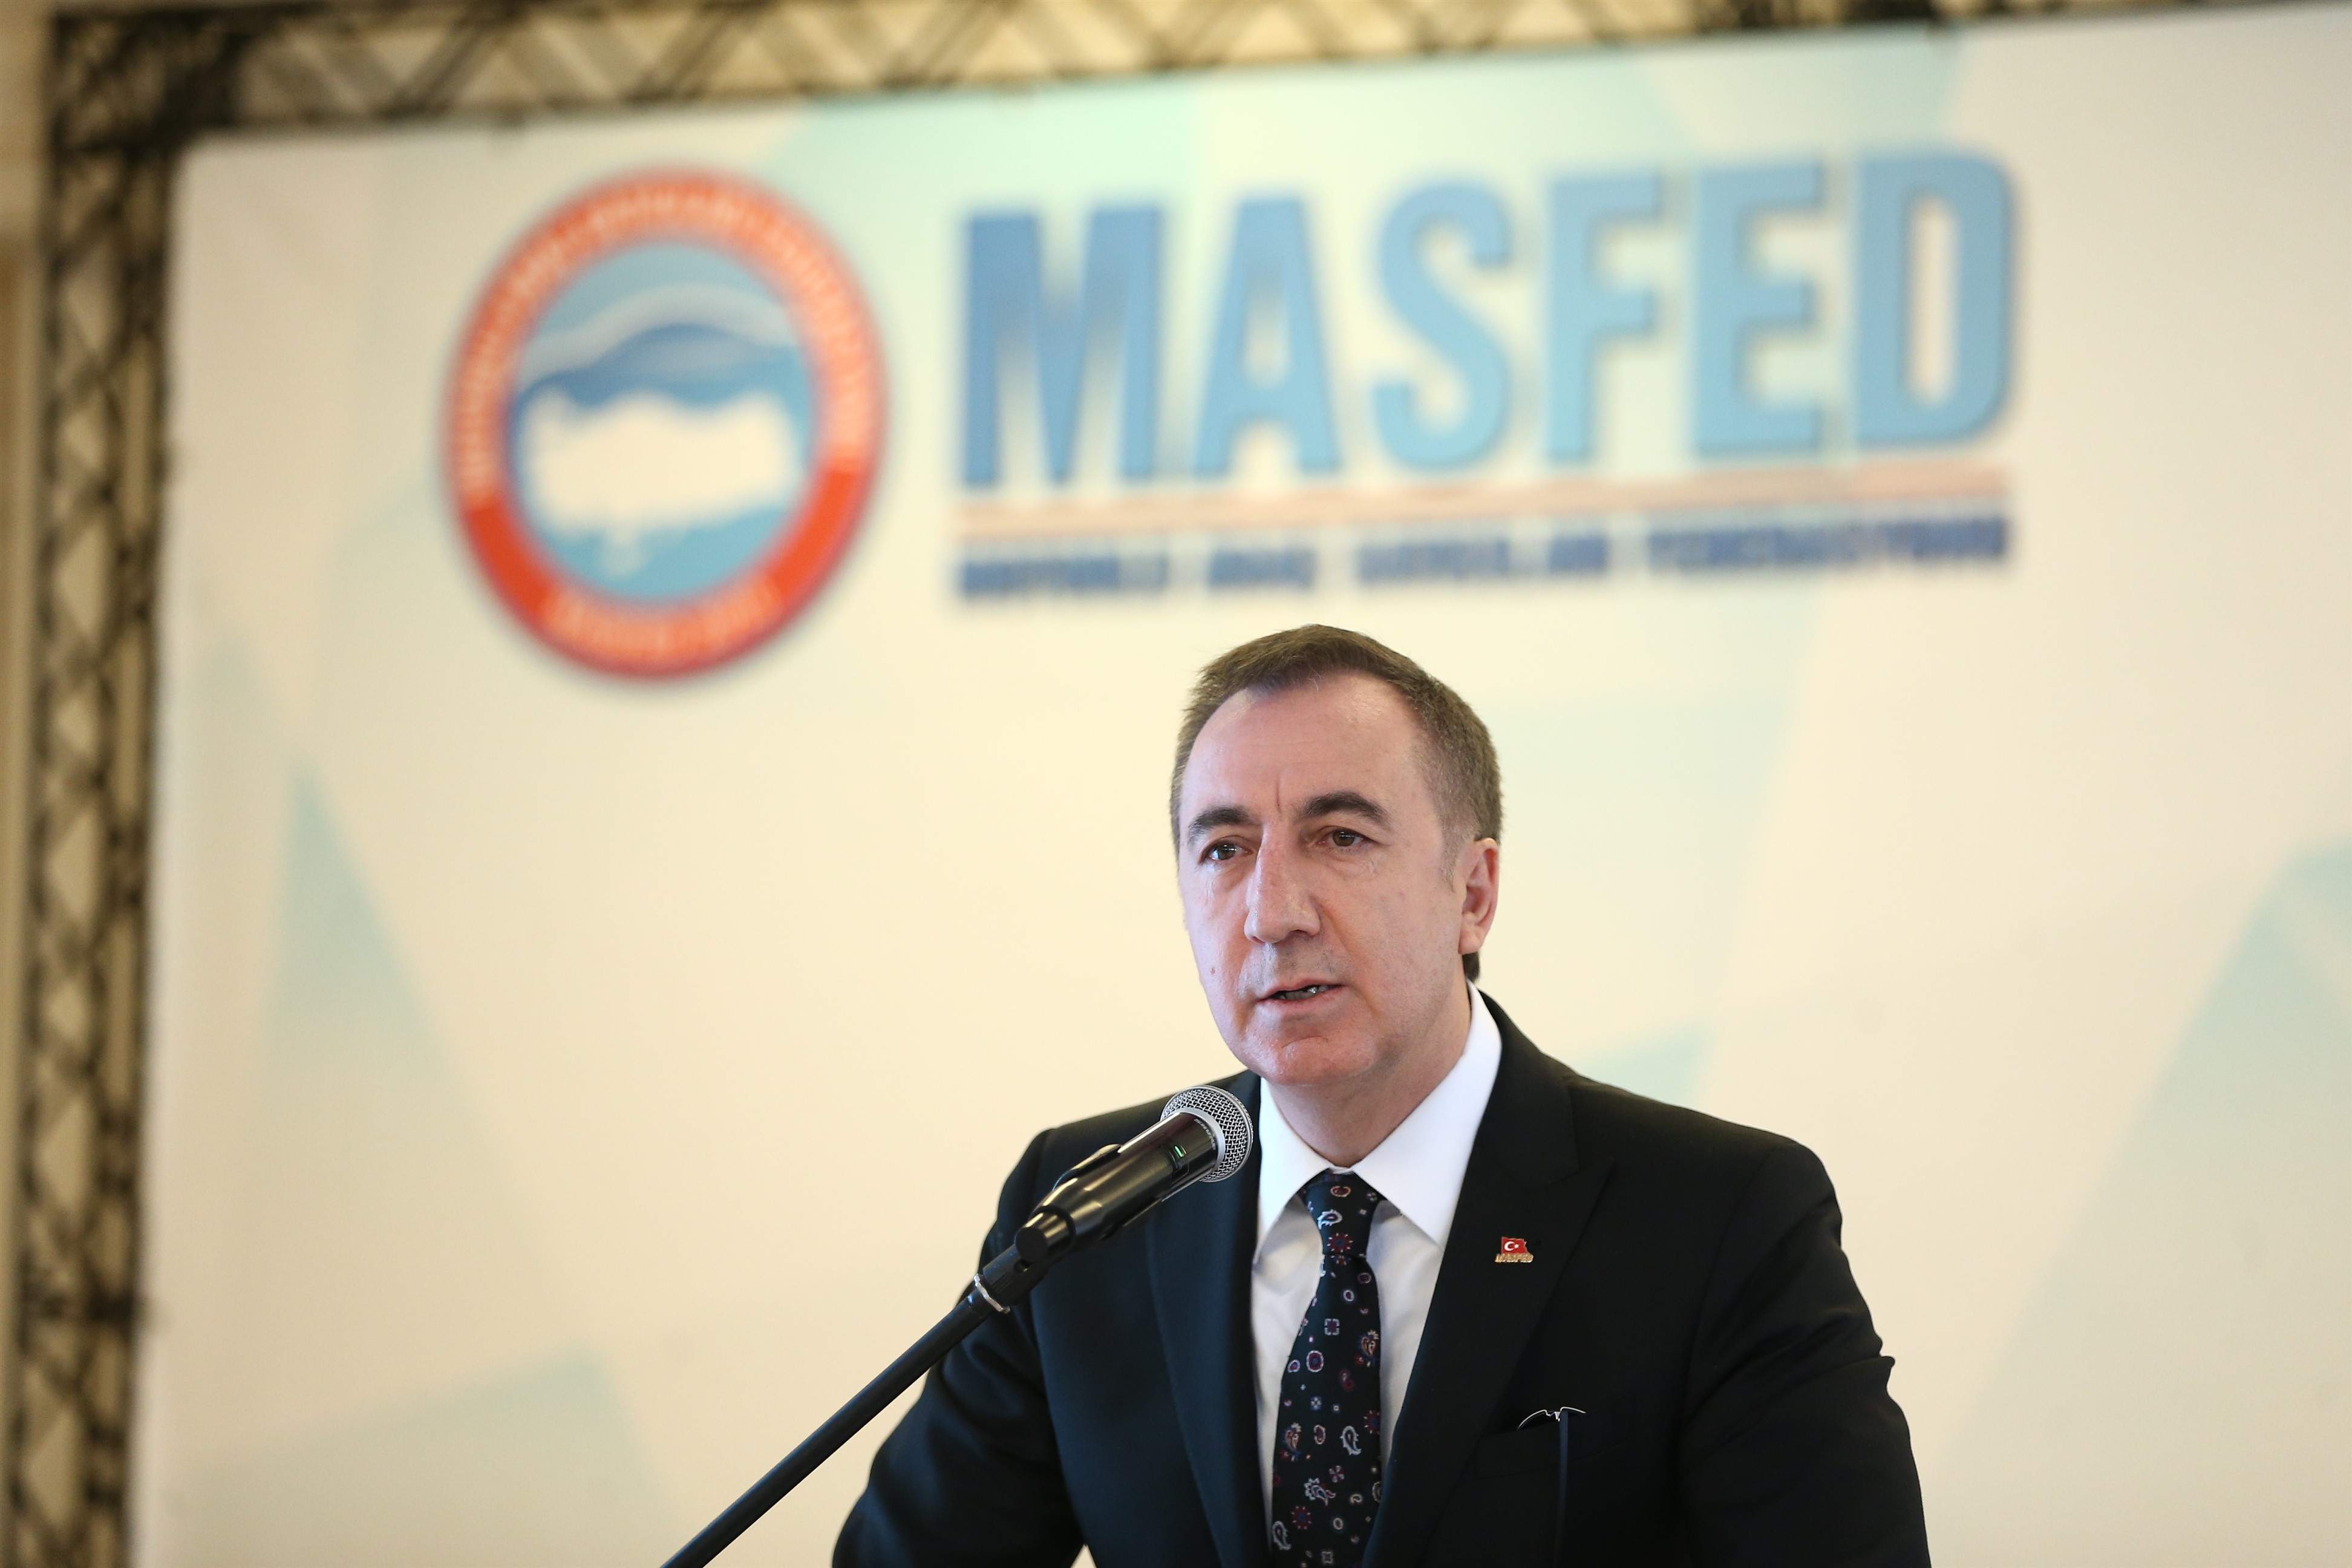 MASFED Genel Başkanı Aydın Erkoç: “YENİ YÖNETMELİKLE KAYIT DIŞILIK ORTADAN KALKACAK”